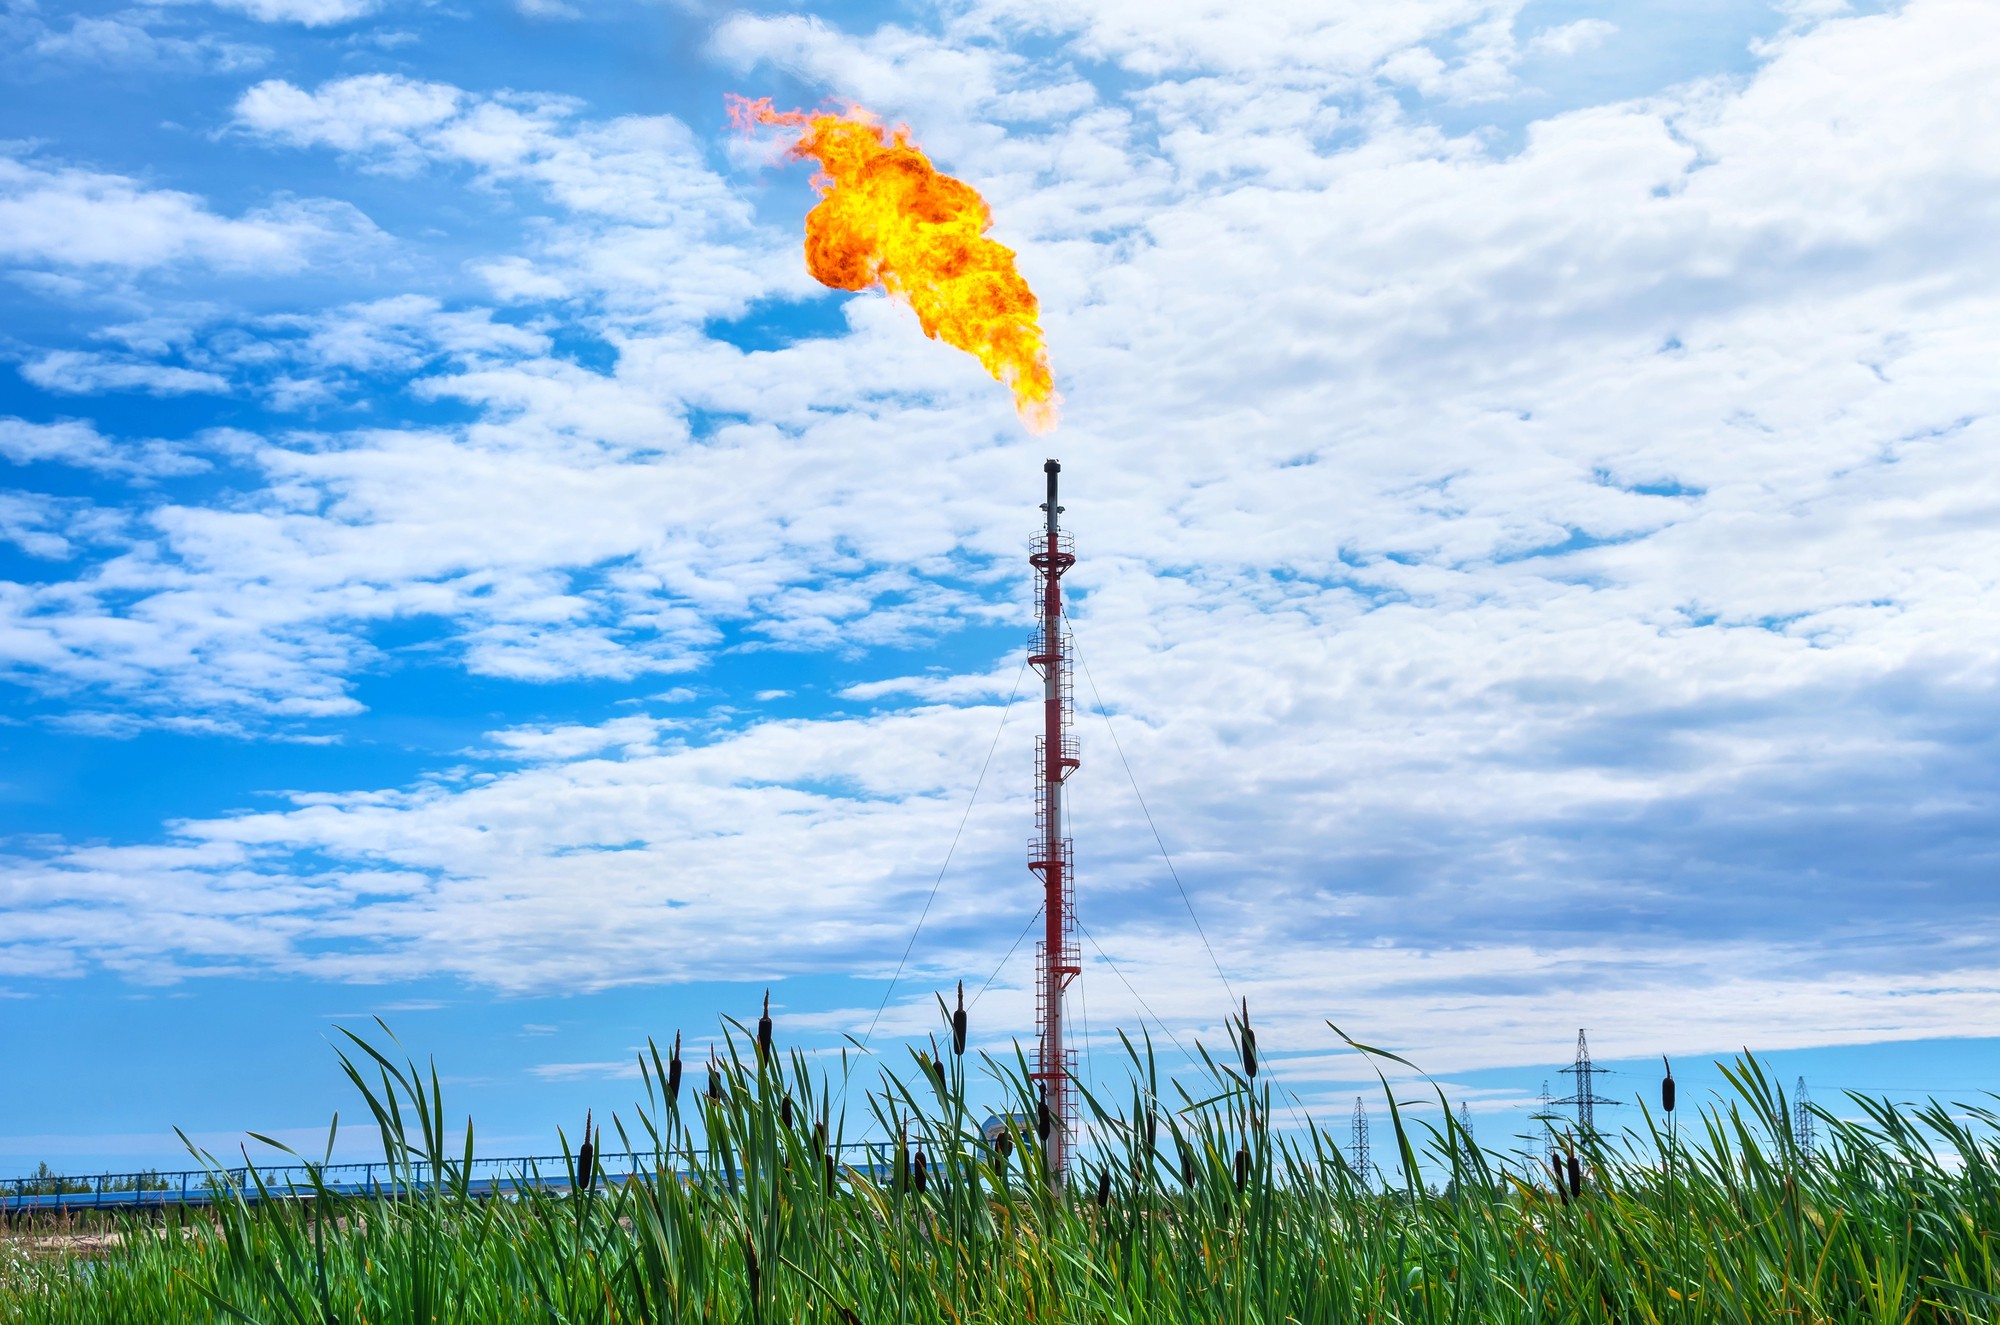 Rinnovabili • Limiti emissioni metano: negli USA presto regole più stringenti